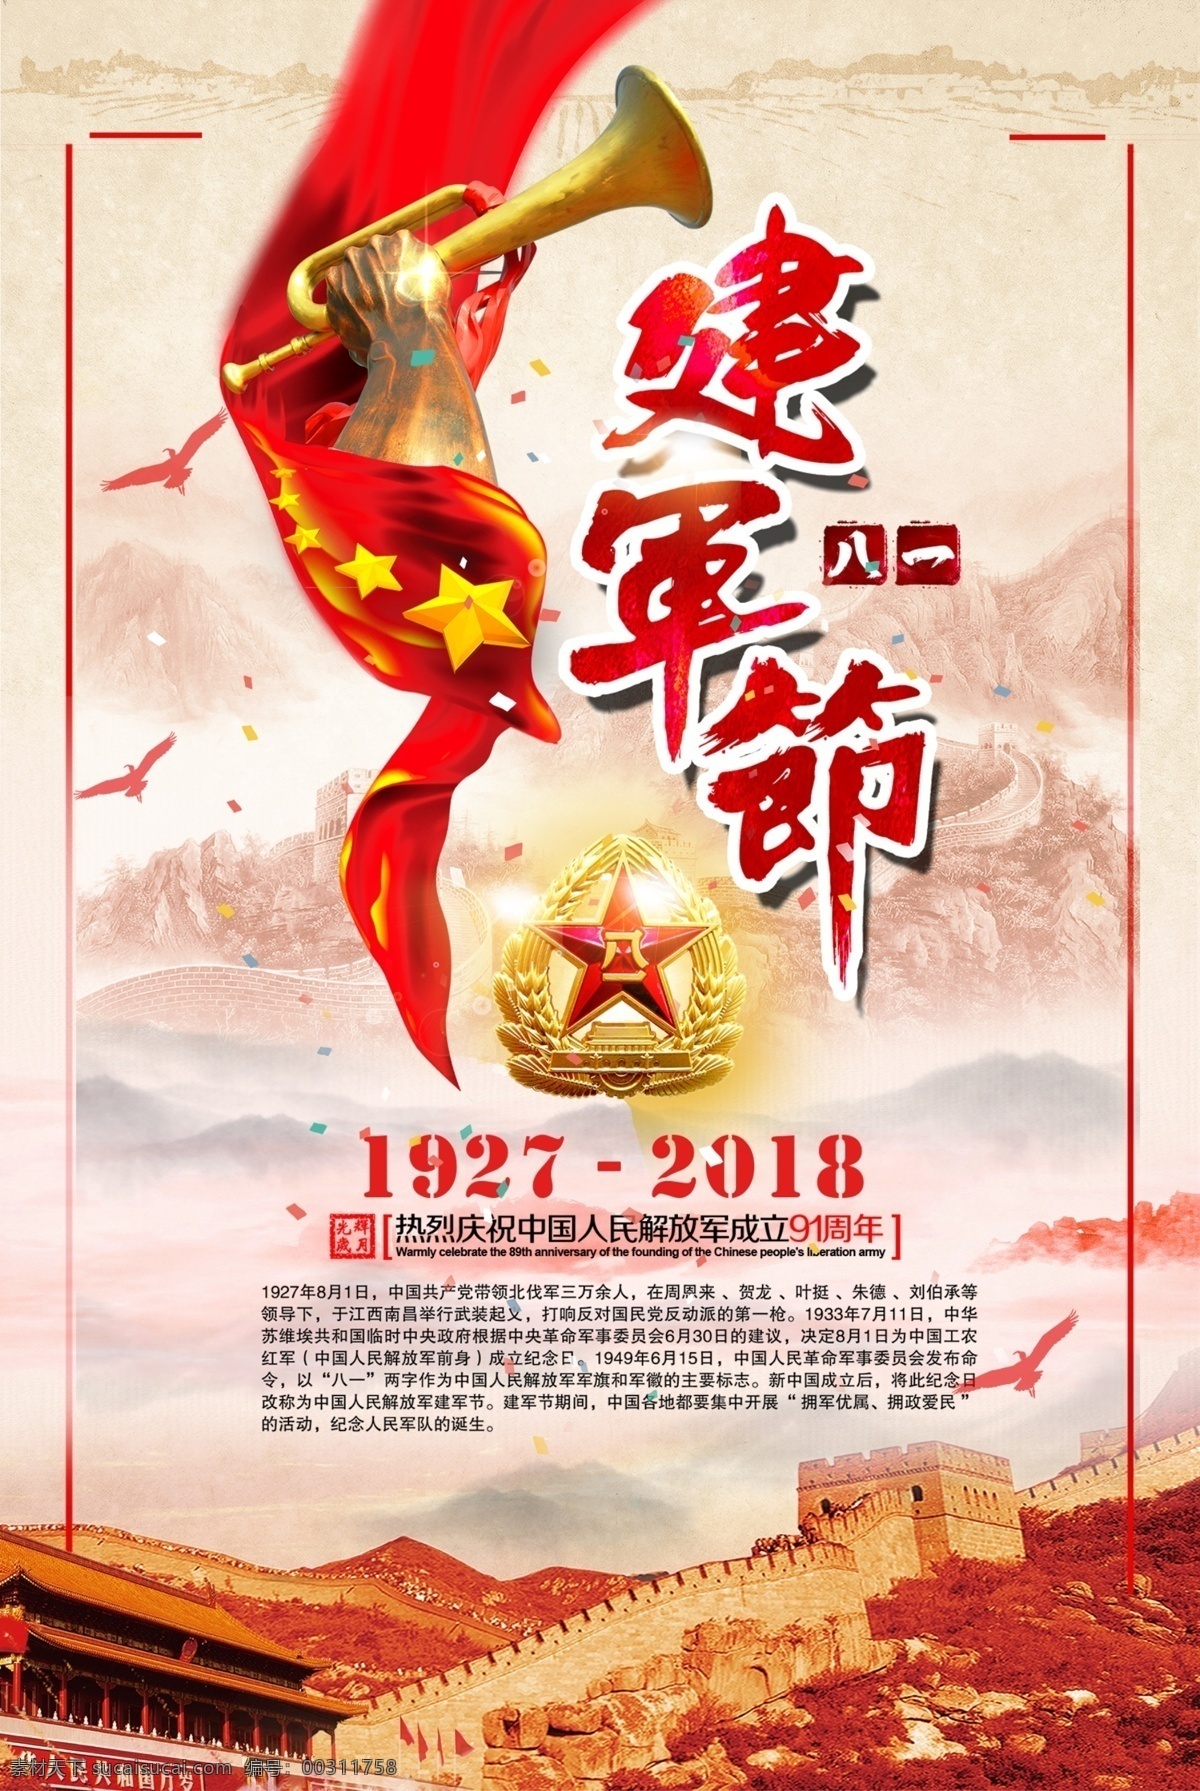 八一建军节 地图 华裱 国徽 长城 红色 部队 军人 招贴设计